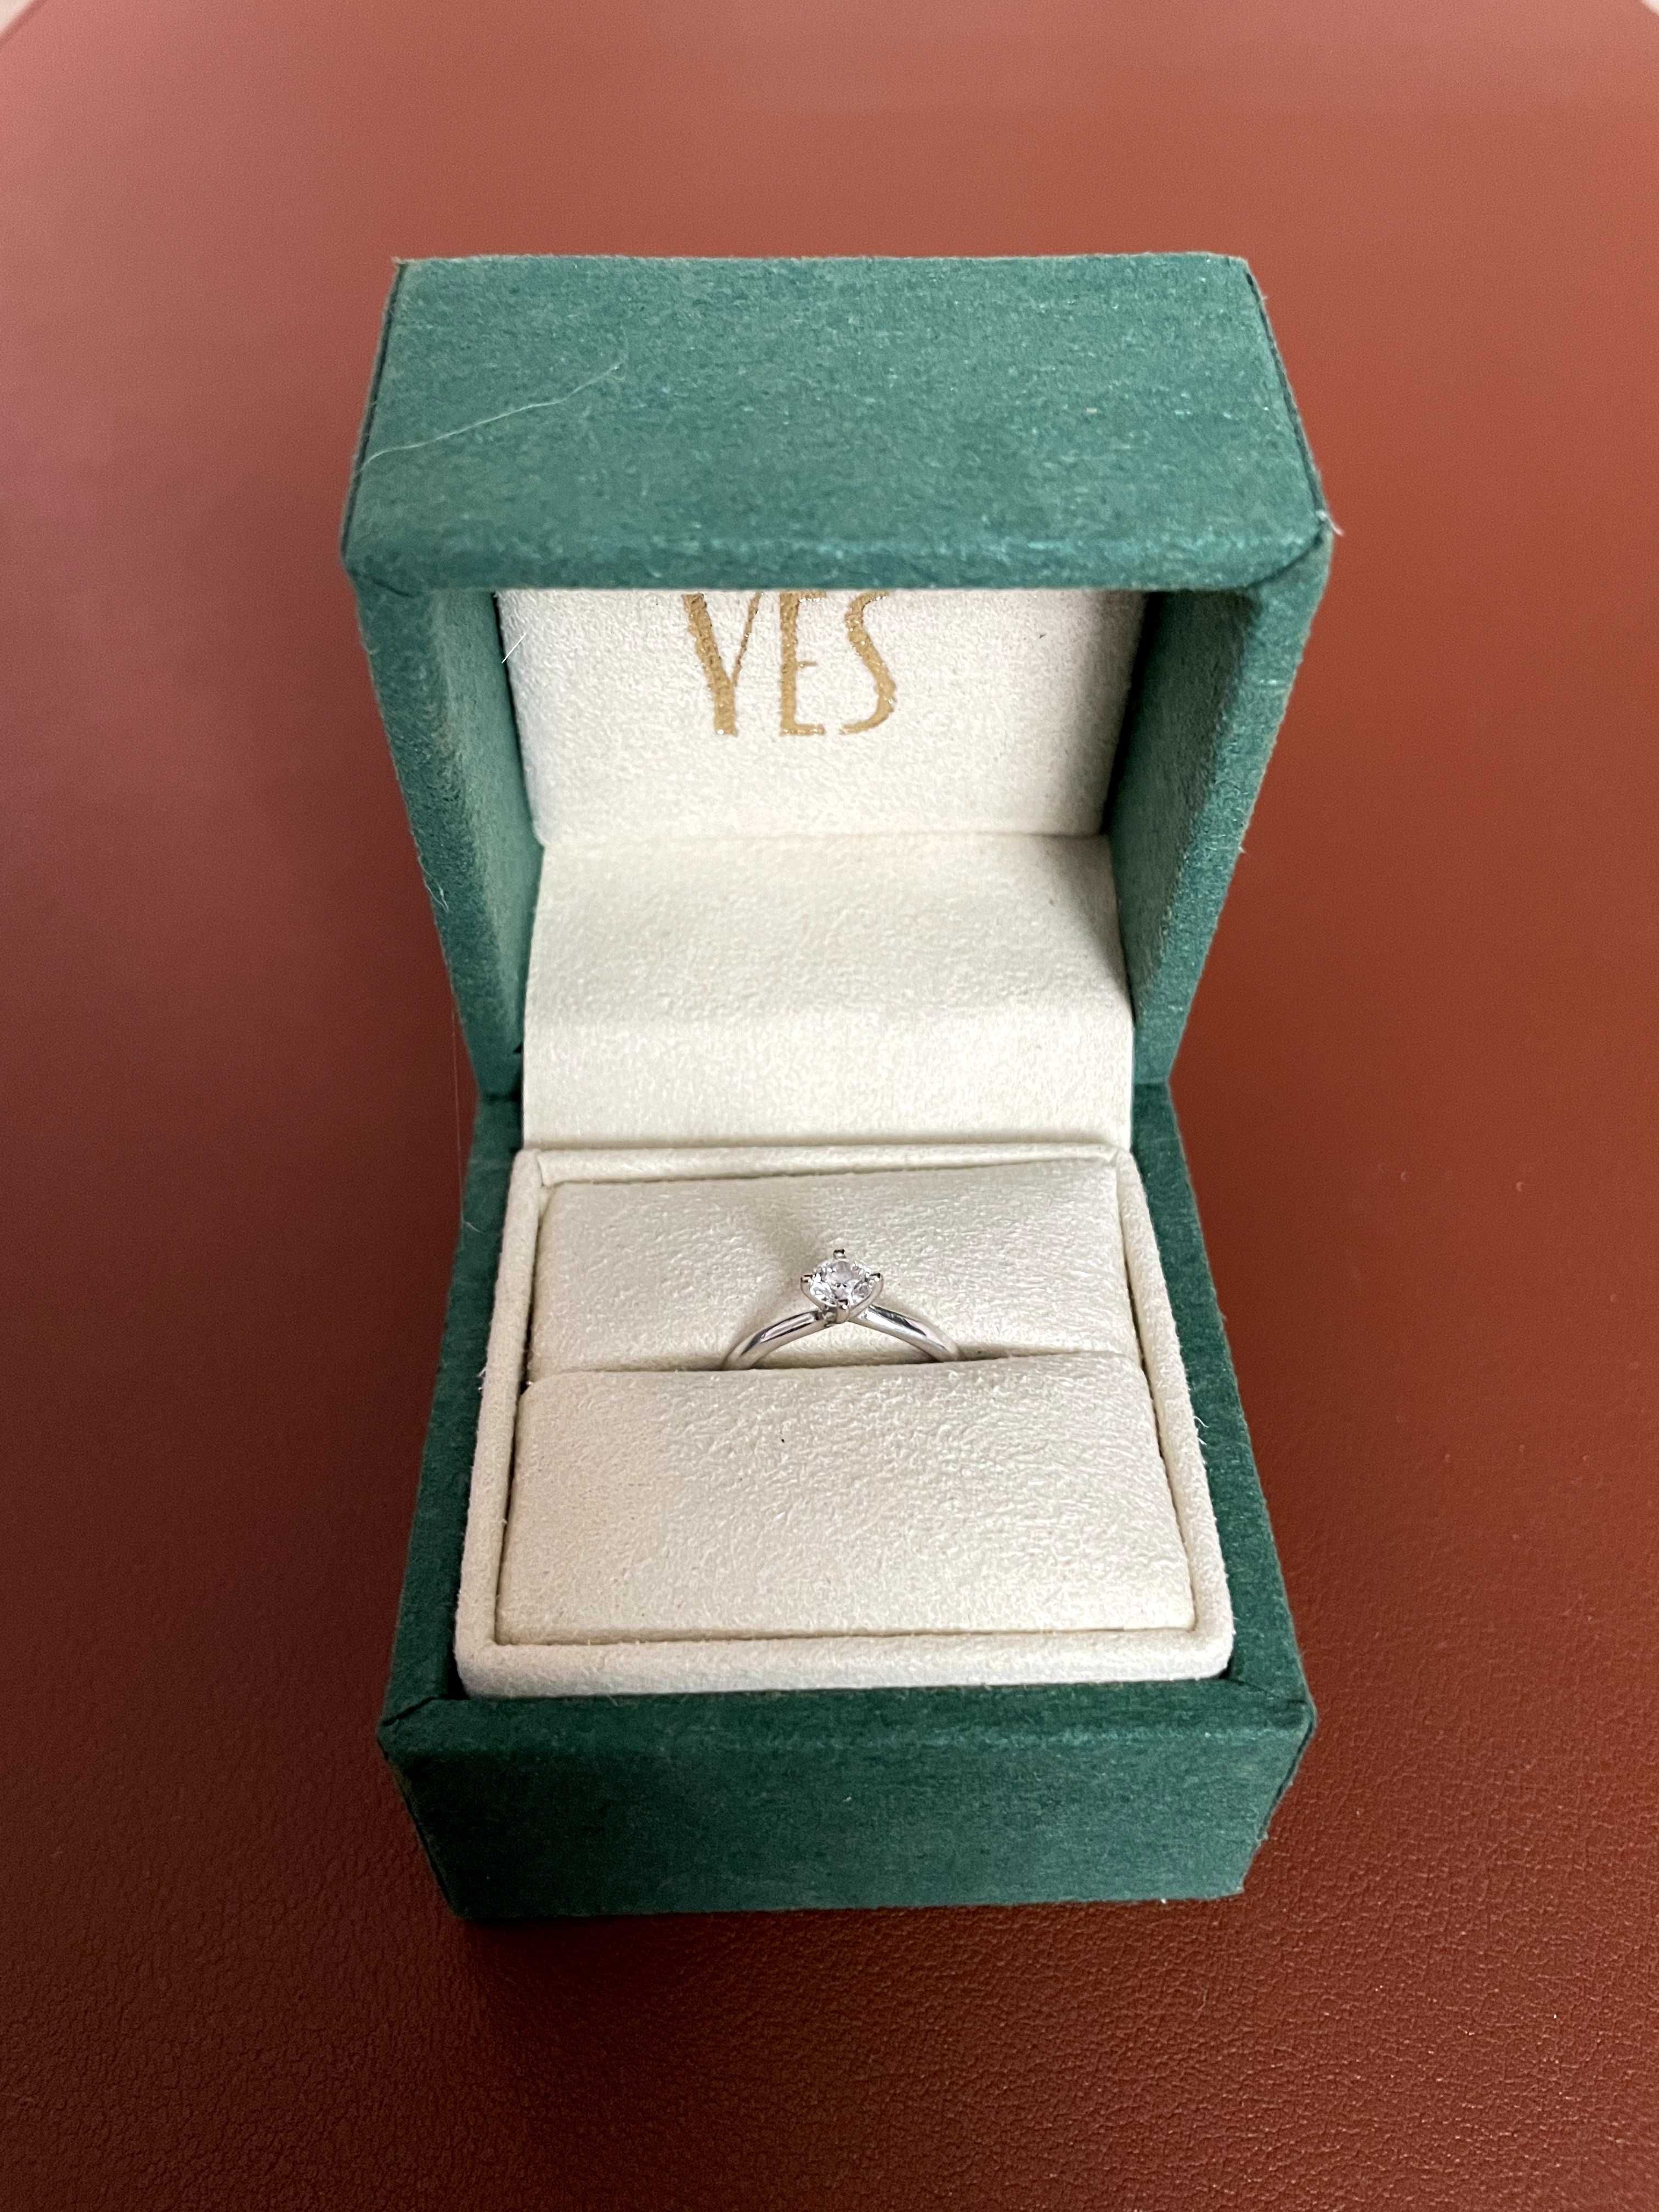 Pierścionek zaręczynowy "YES Valentine" z diamentem 0.26 - certyfikat